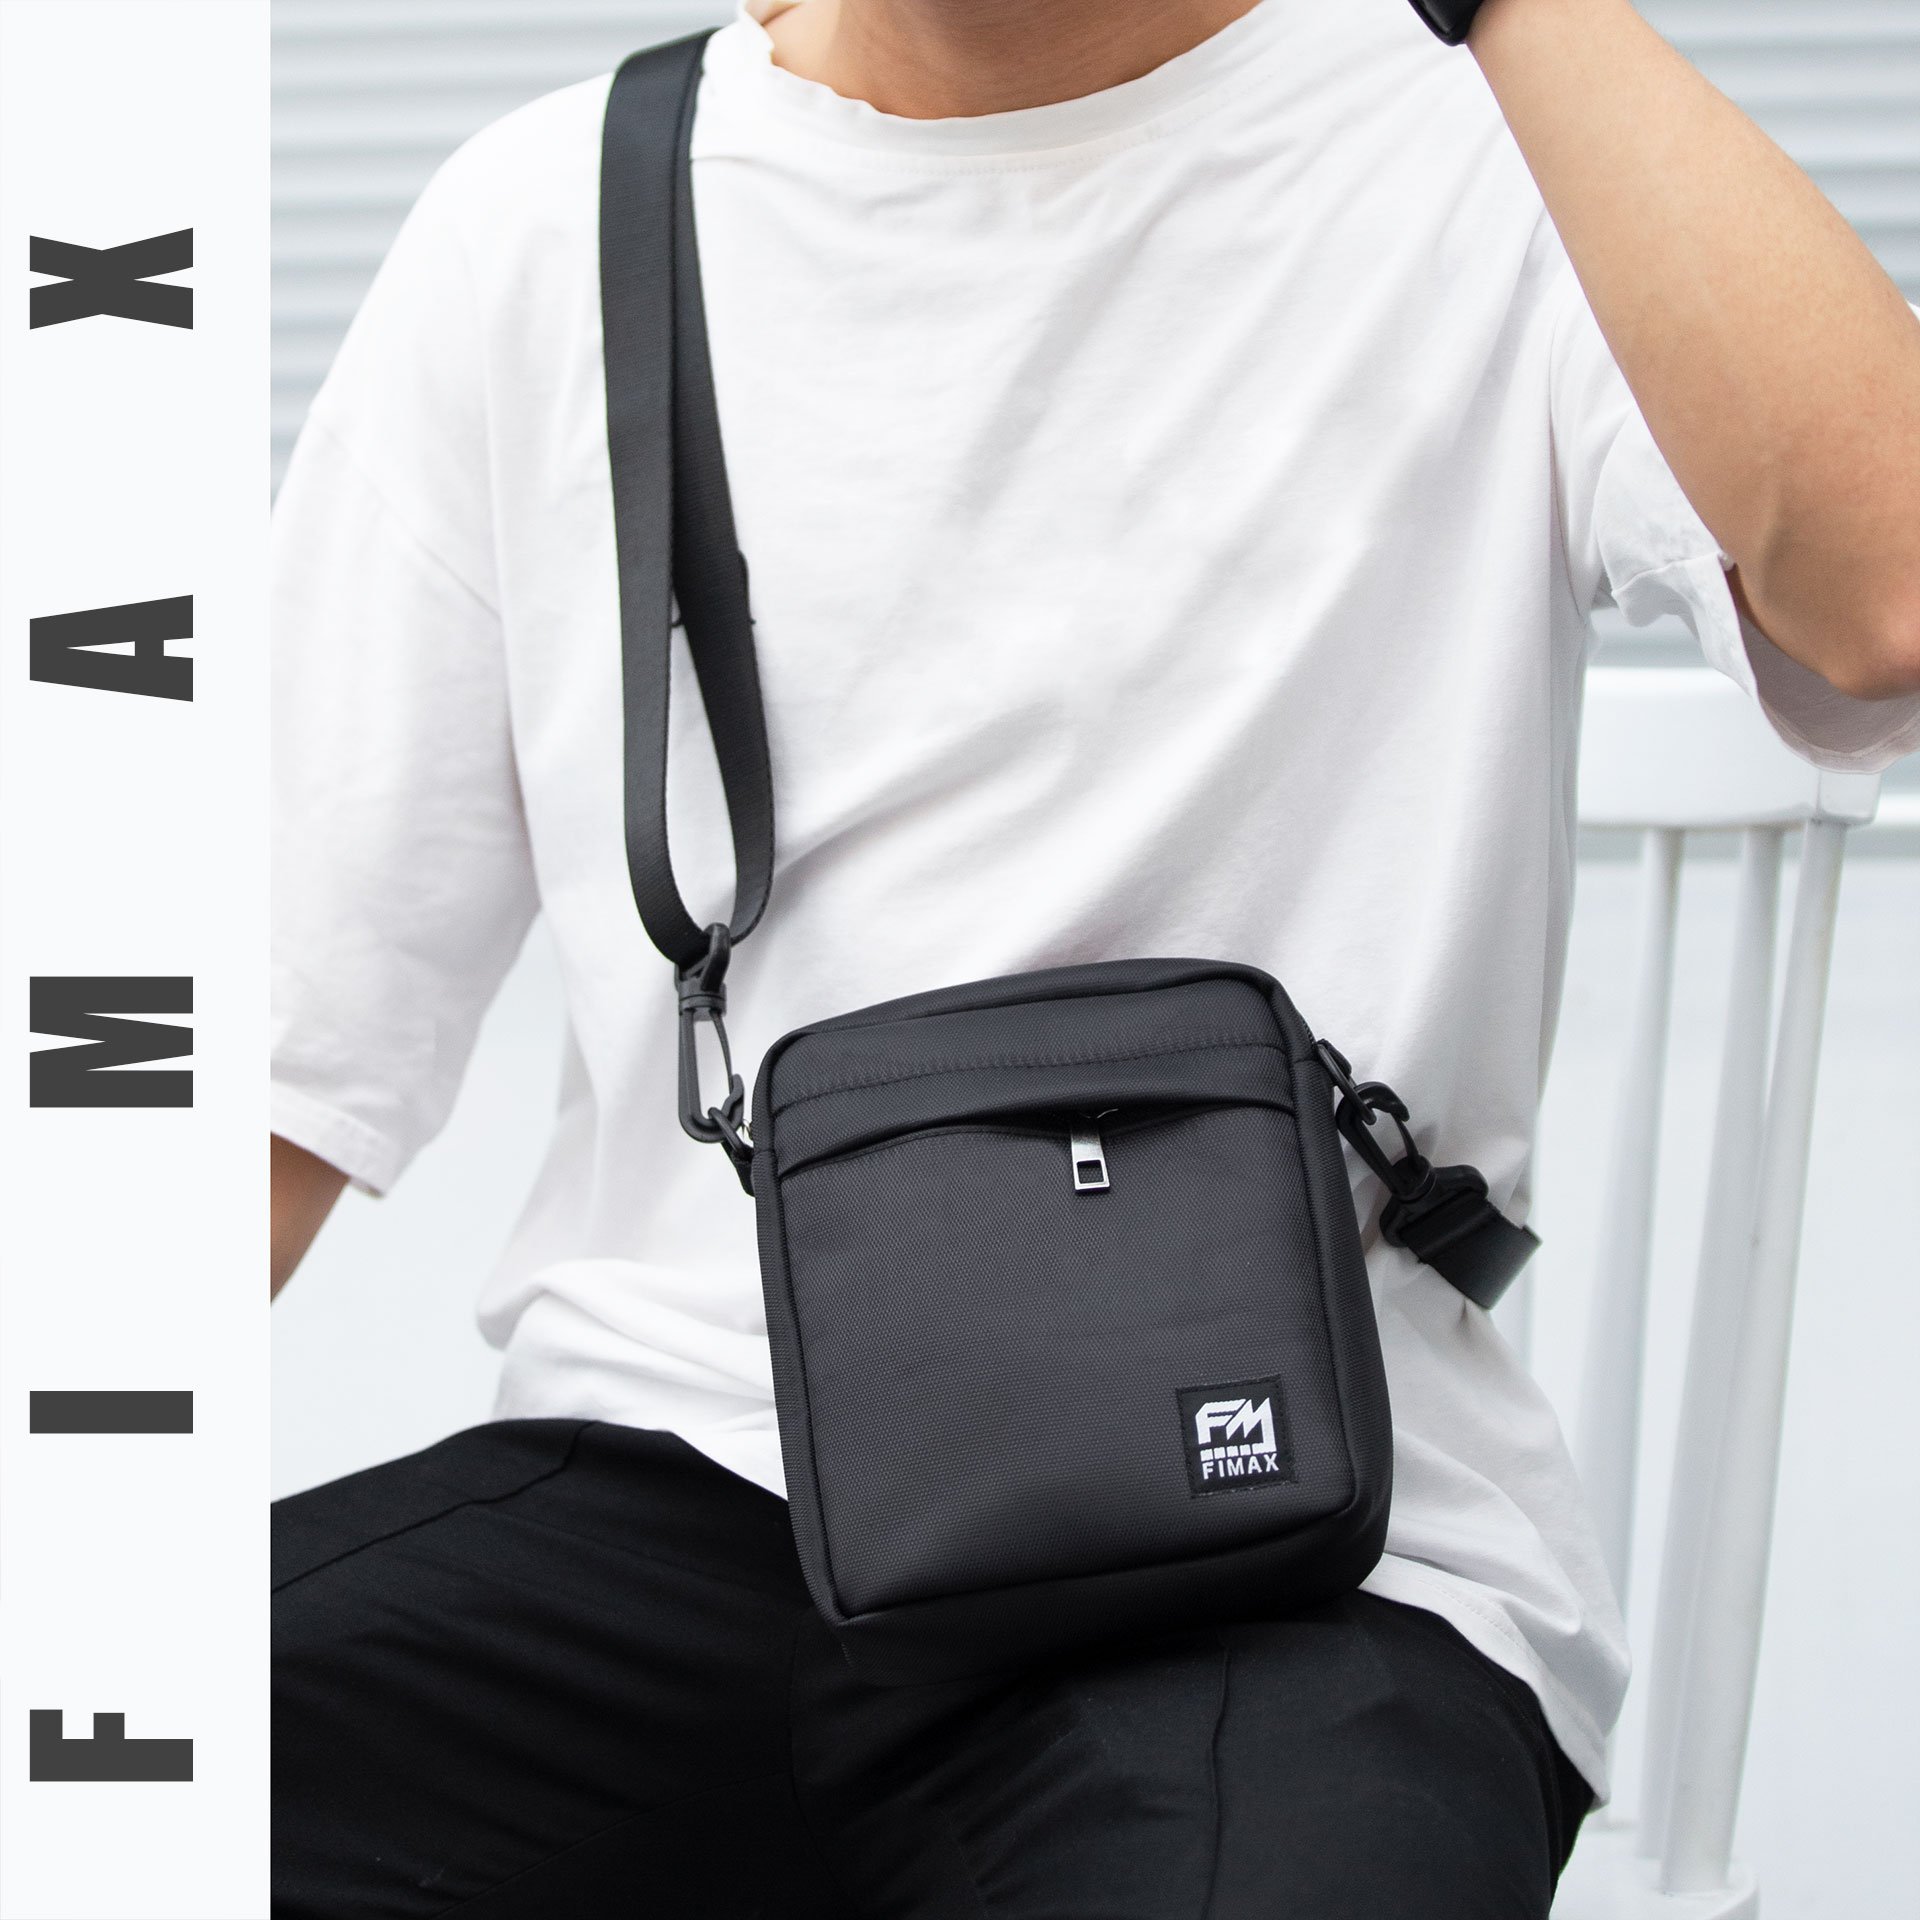 Túi đeo mini unisex cá tính Fimax cho nam nữ, túi đeo chéo nhỏ gọn với kích thước 17x15x5cm làm từ vải chống nước dùng đựng điện thoại và phụ kiện cá nhân khi đi chơi dự tiệc